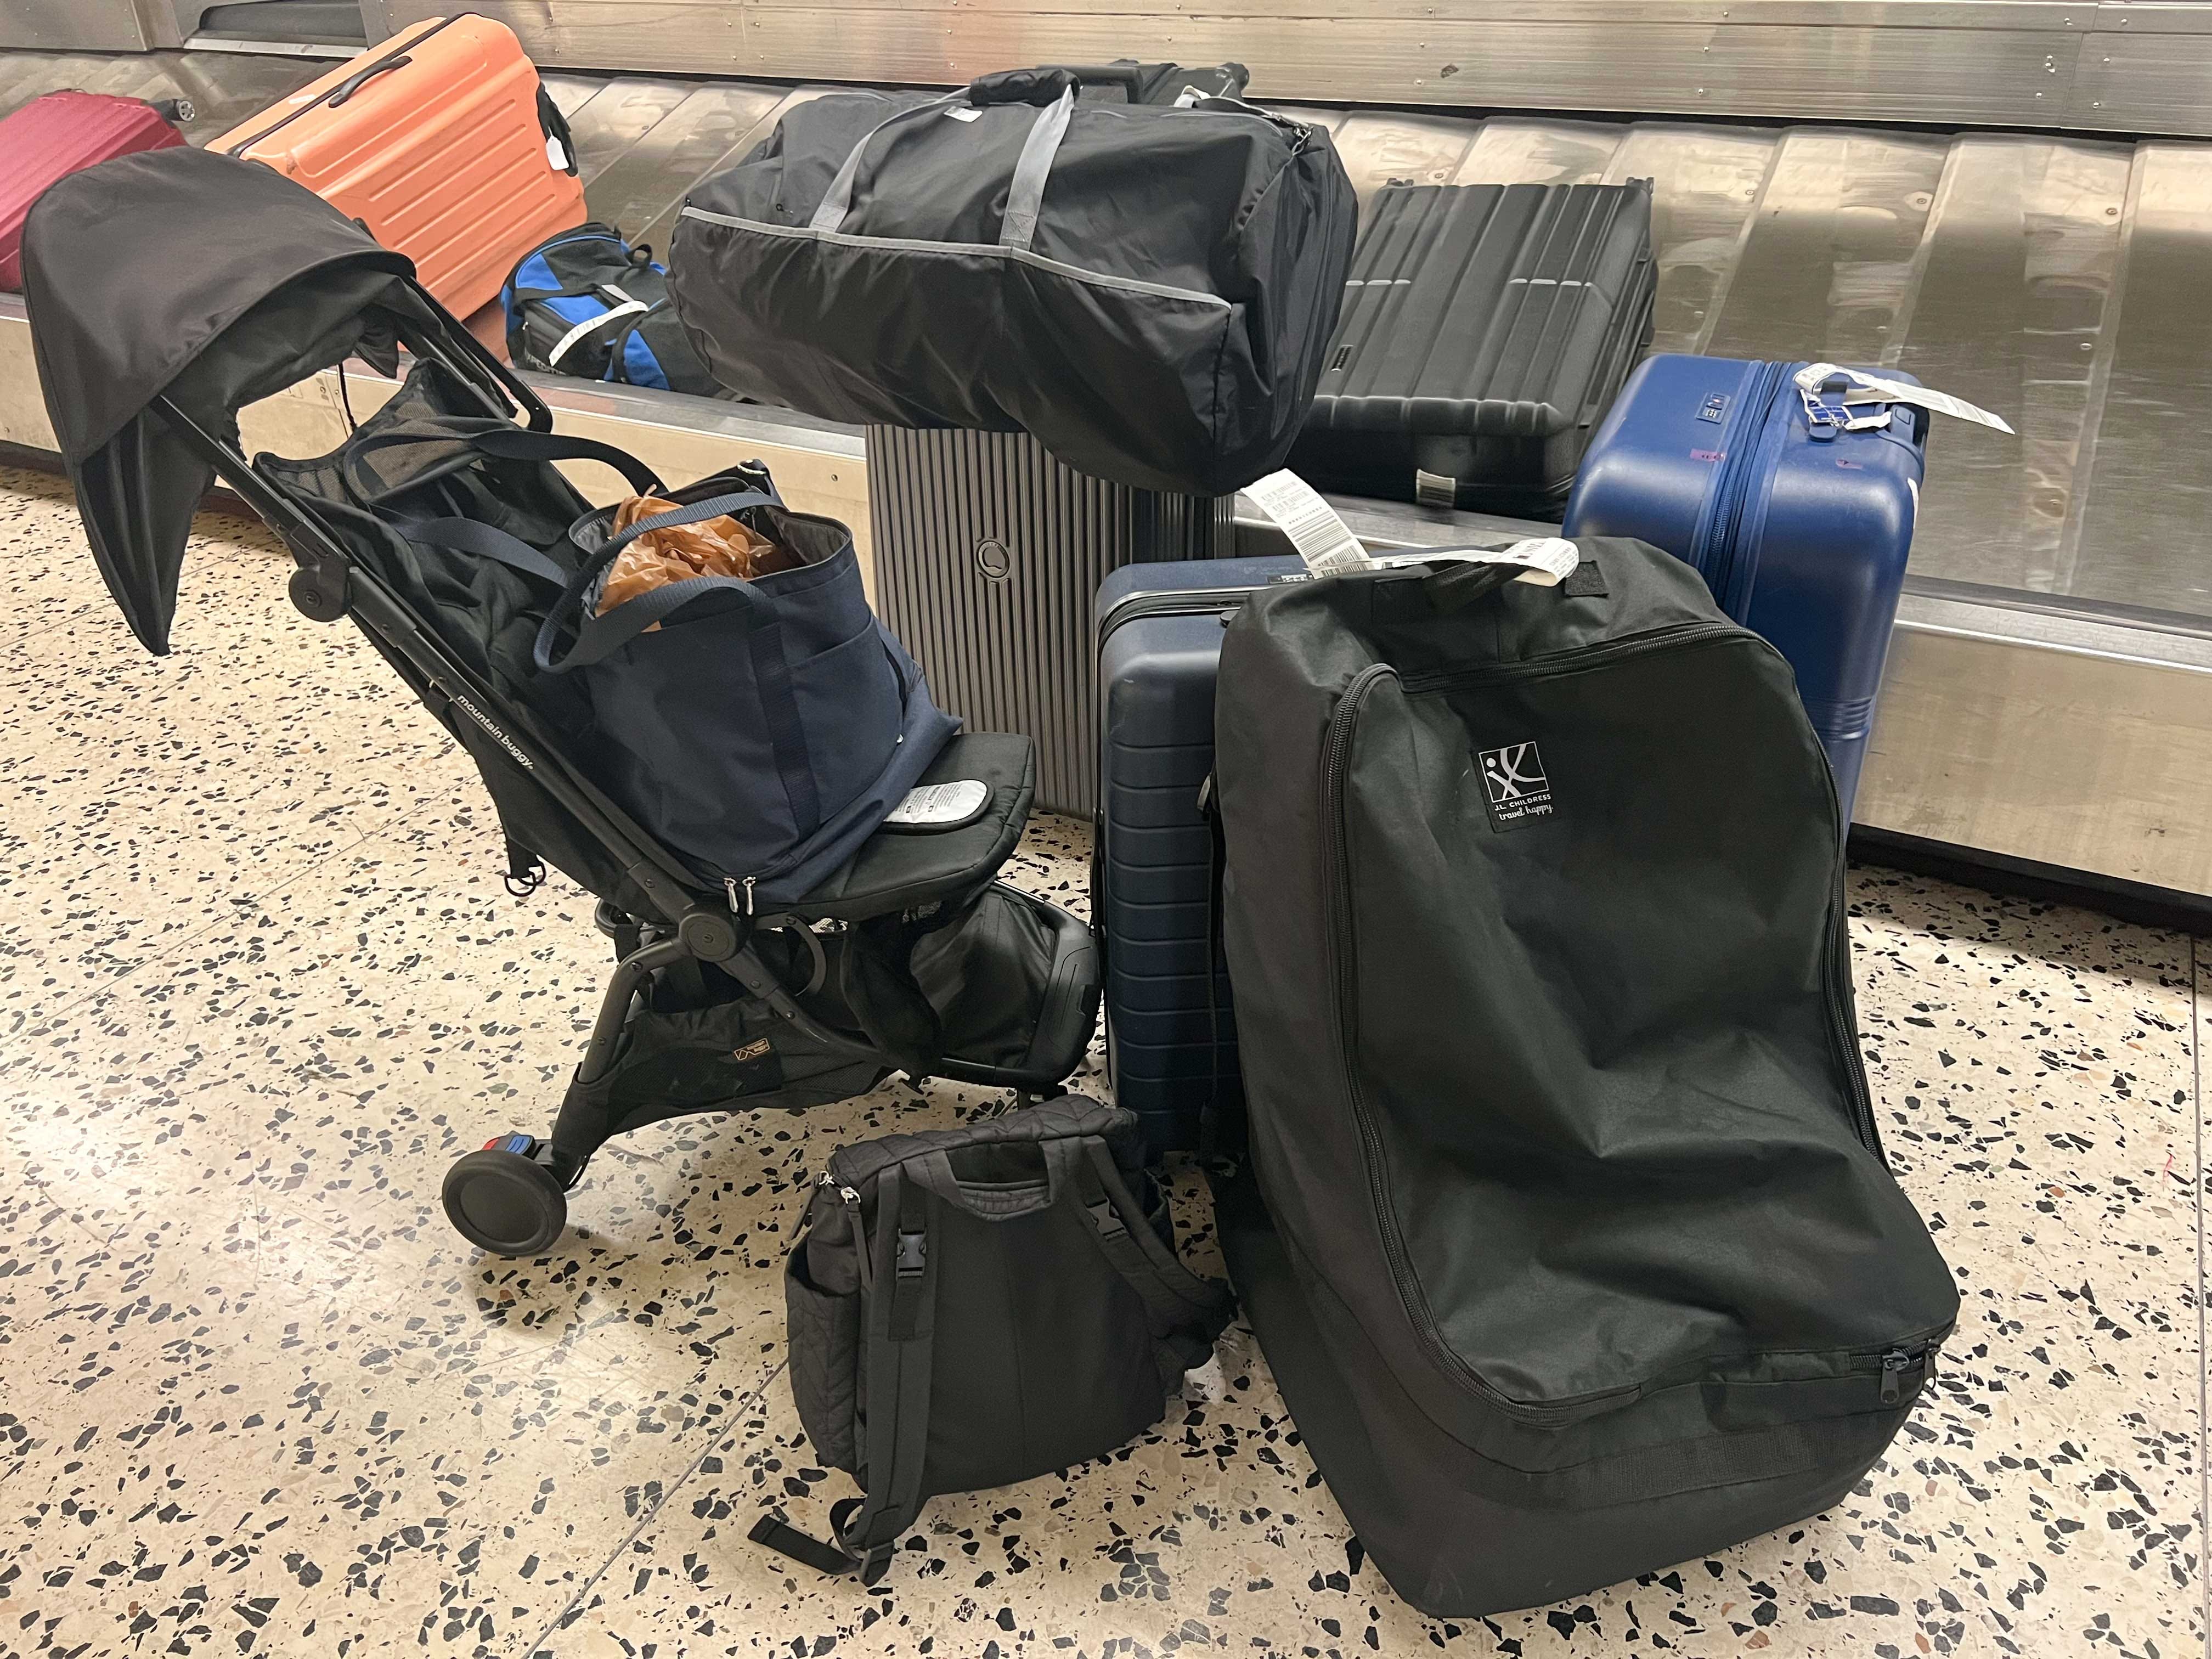 Mehrere große Gepäckstücke, ein Kinderwagen und kleinere Taschen stehen neben einem Gepäckband an einem Flughafen.